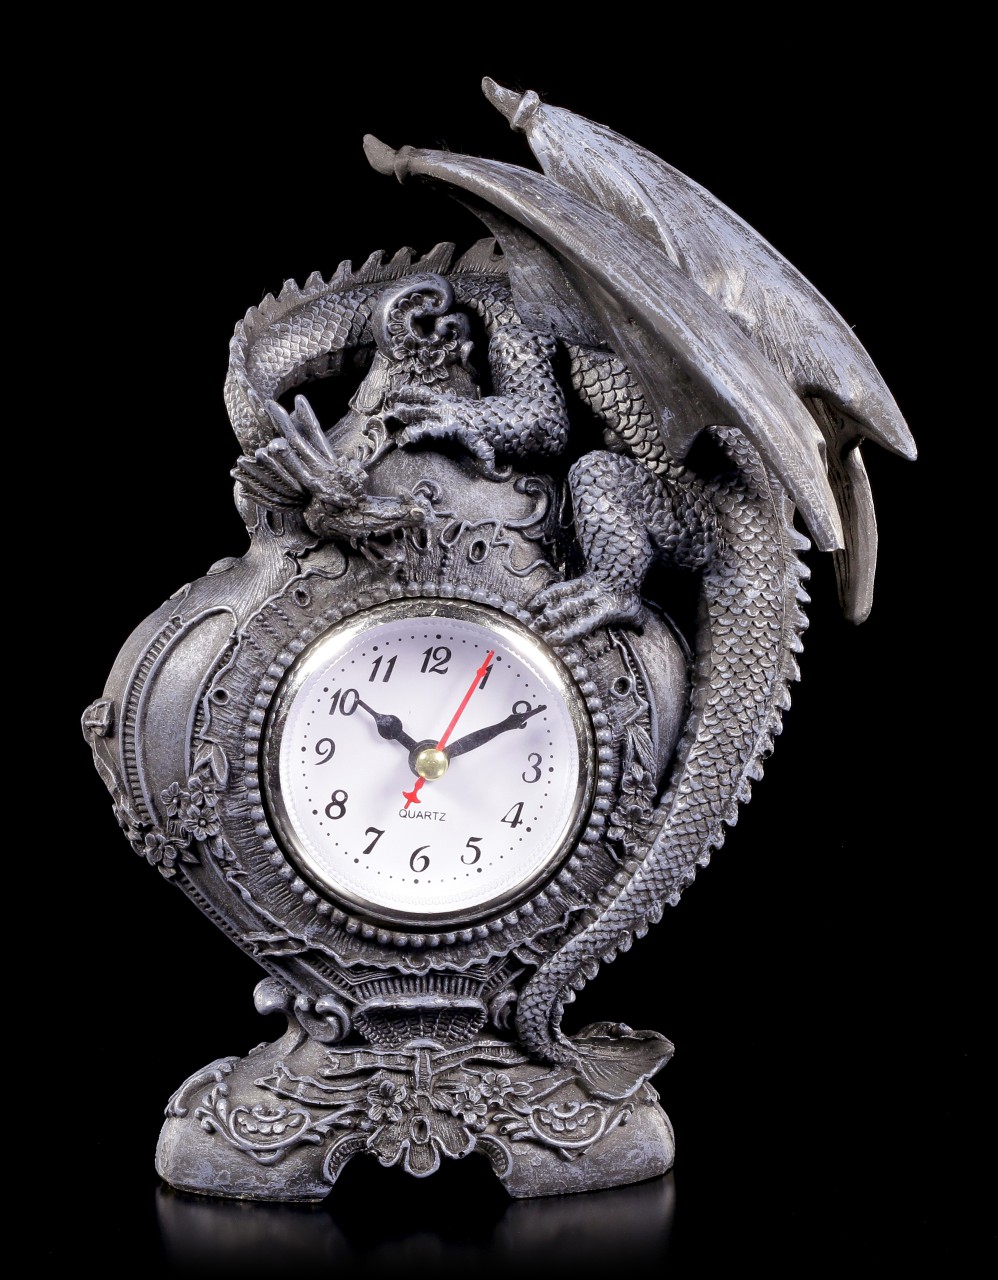 Drachen Standuhr Tischuhr Uhr Drache Dragon Drachenuhr Gothic wgt 766-7039 